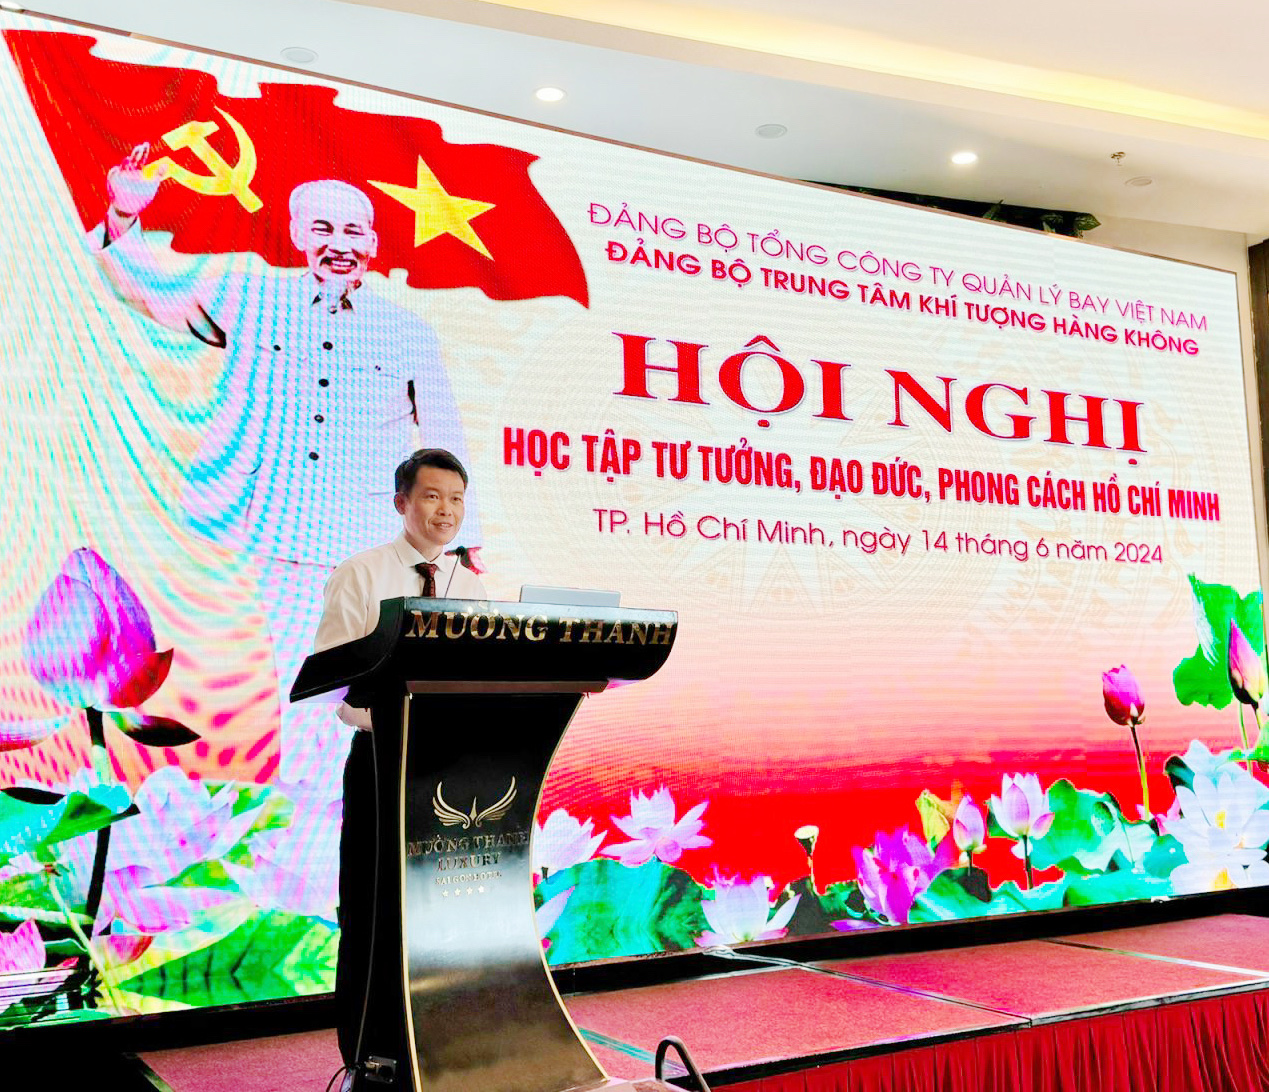 Đảng ủy Trung tâm Khí tượng hàng không tổ chức Hội nghị học tập tư tưởng, đạo đức, phong cách Hồ Chí Minh